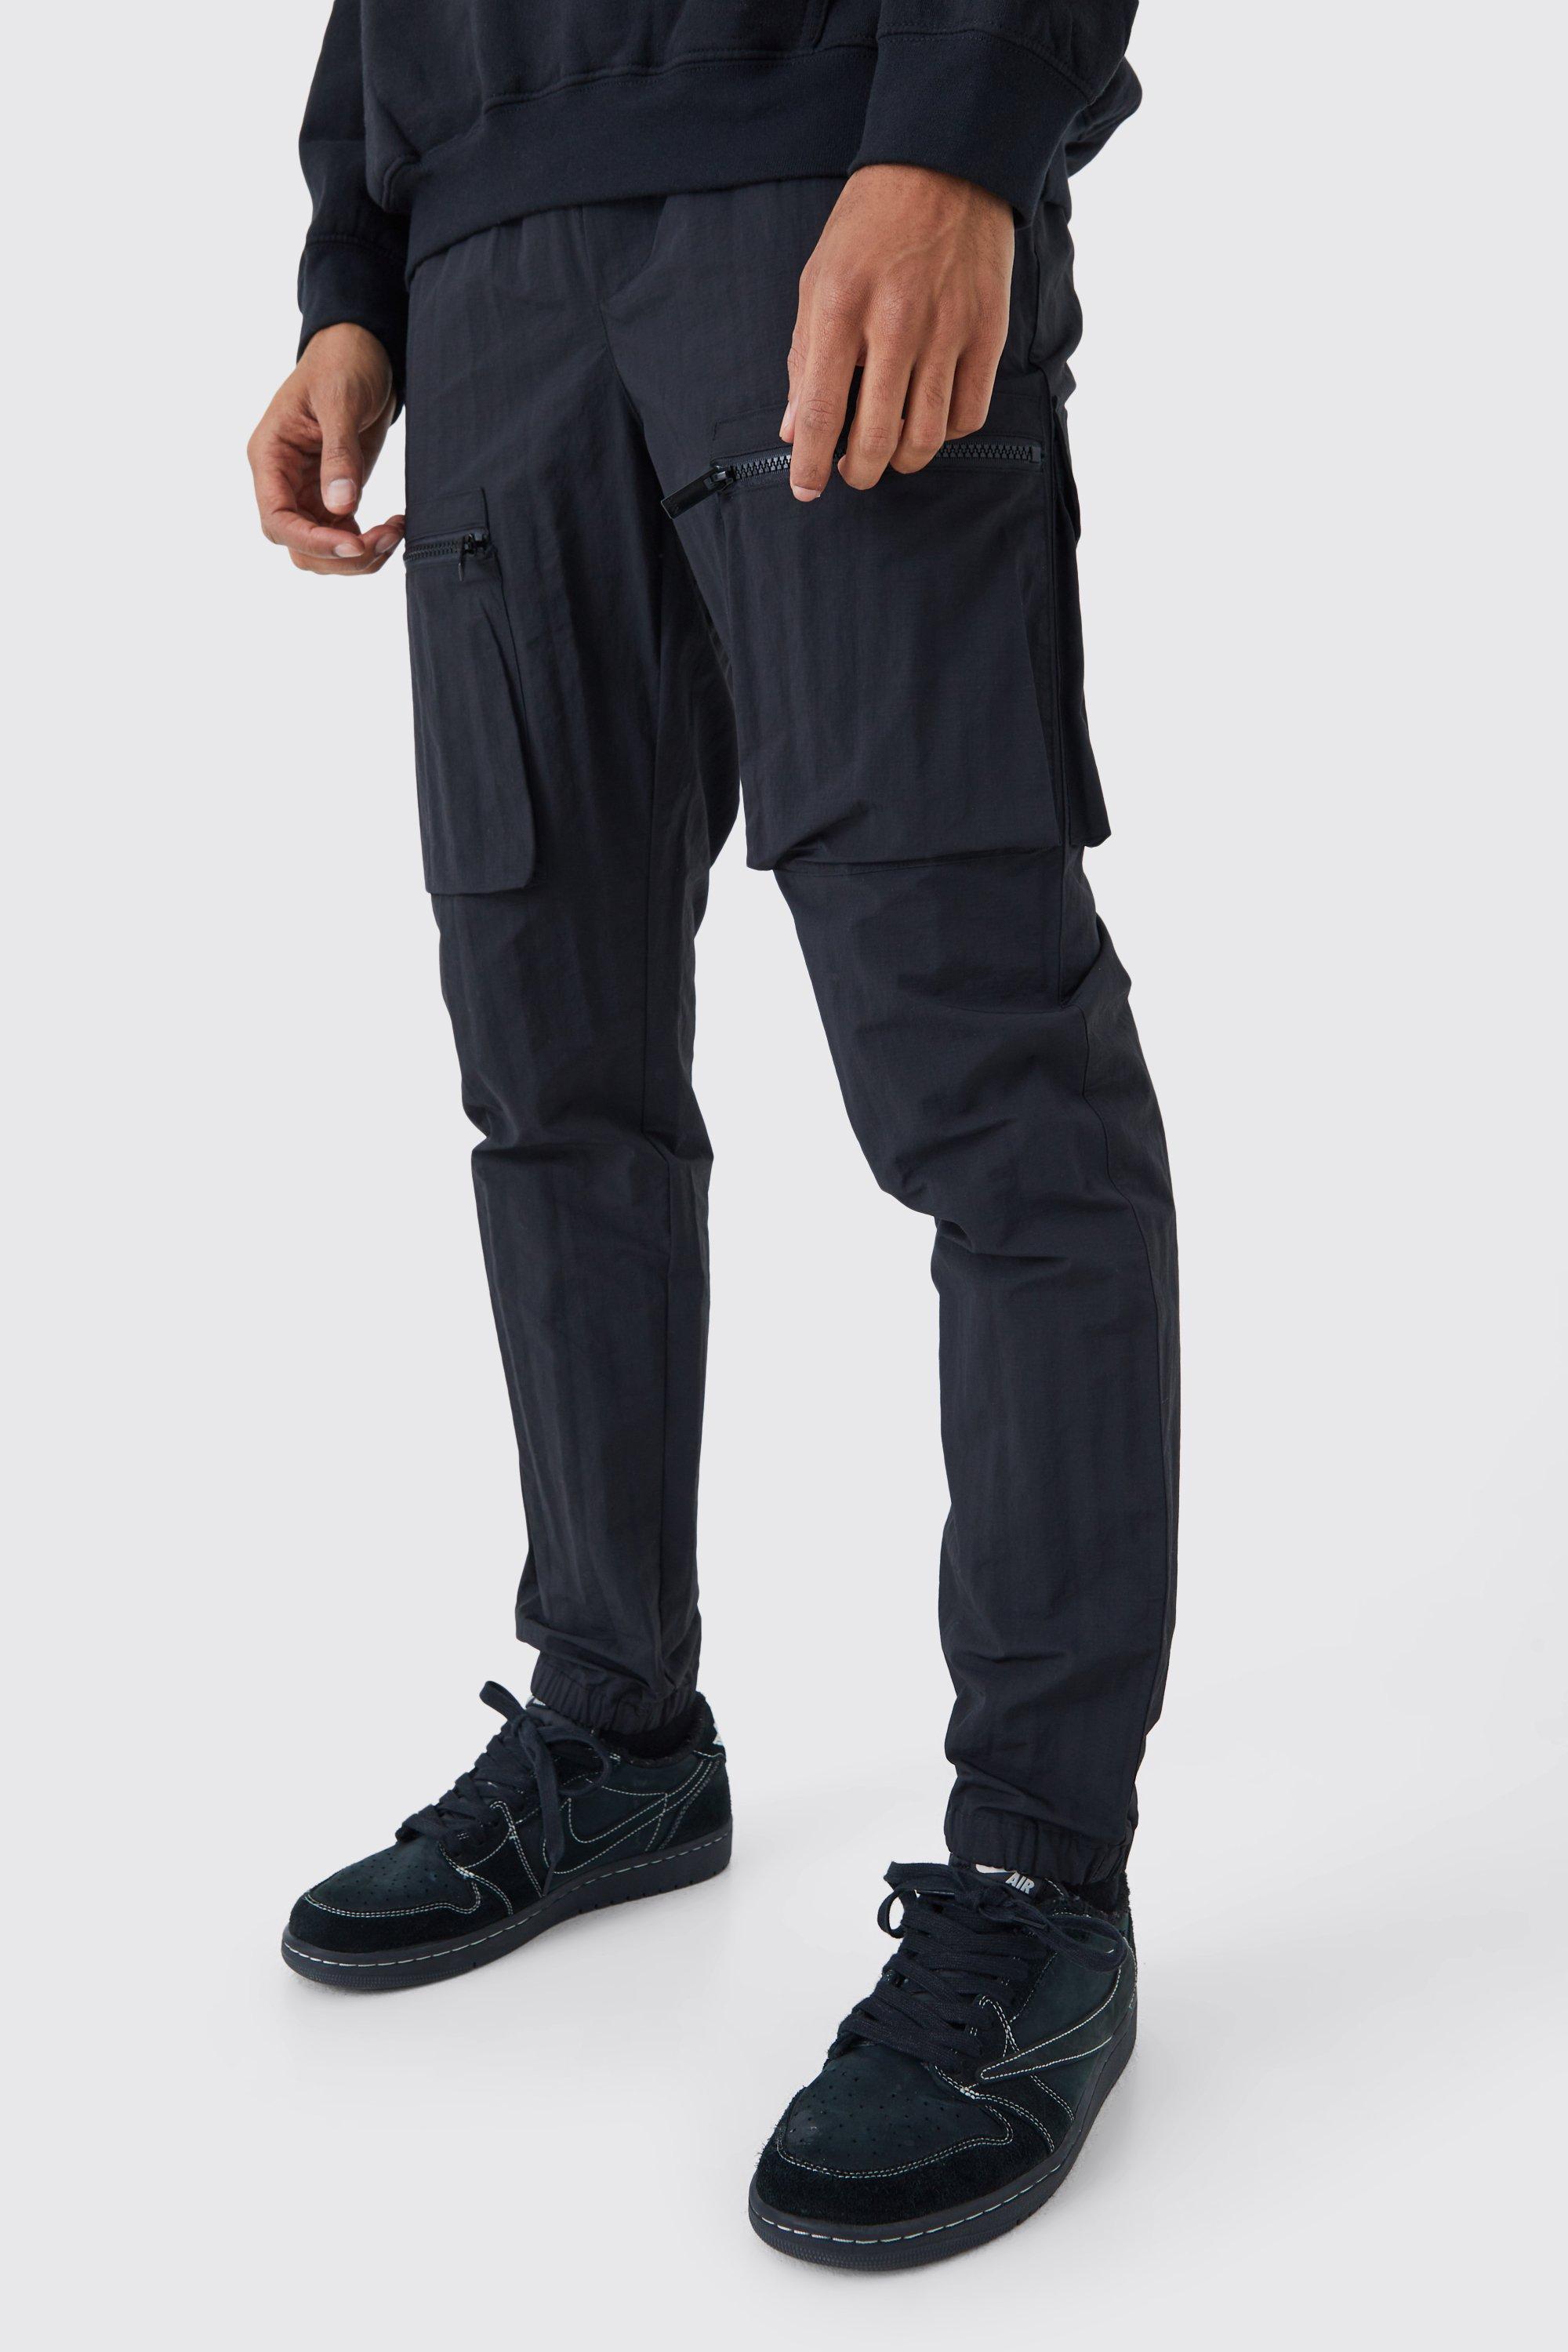 pantalon cargo slim en nylon homme - noir - 34r, noir